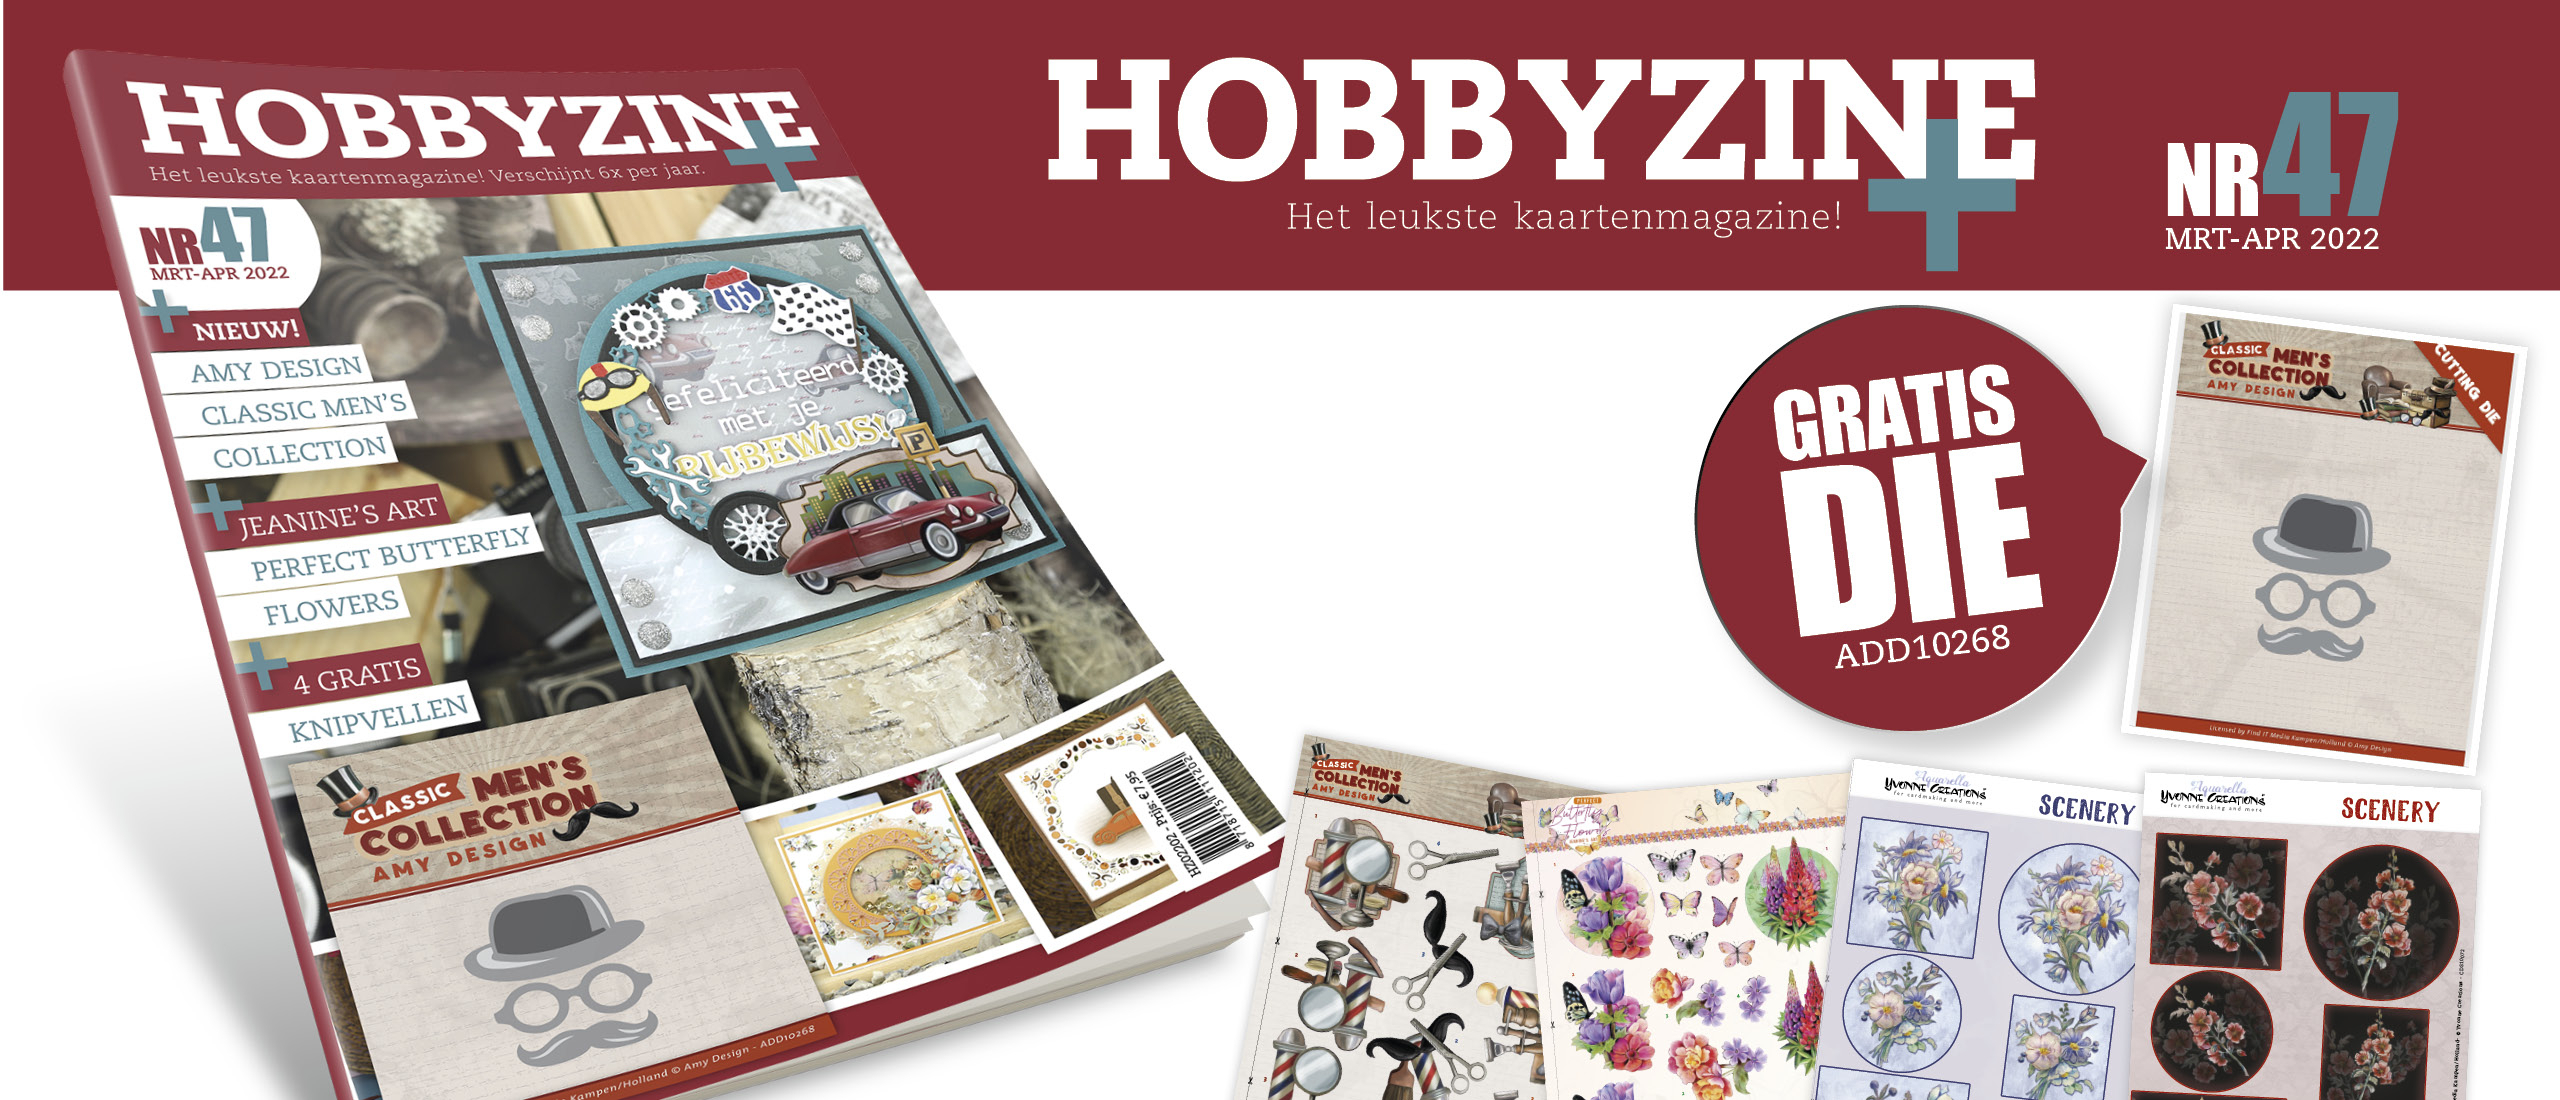 Gratis extra's bij Hobbyzine Plus 47: een gratis snijmal!